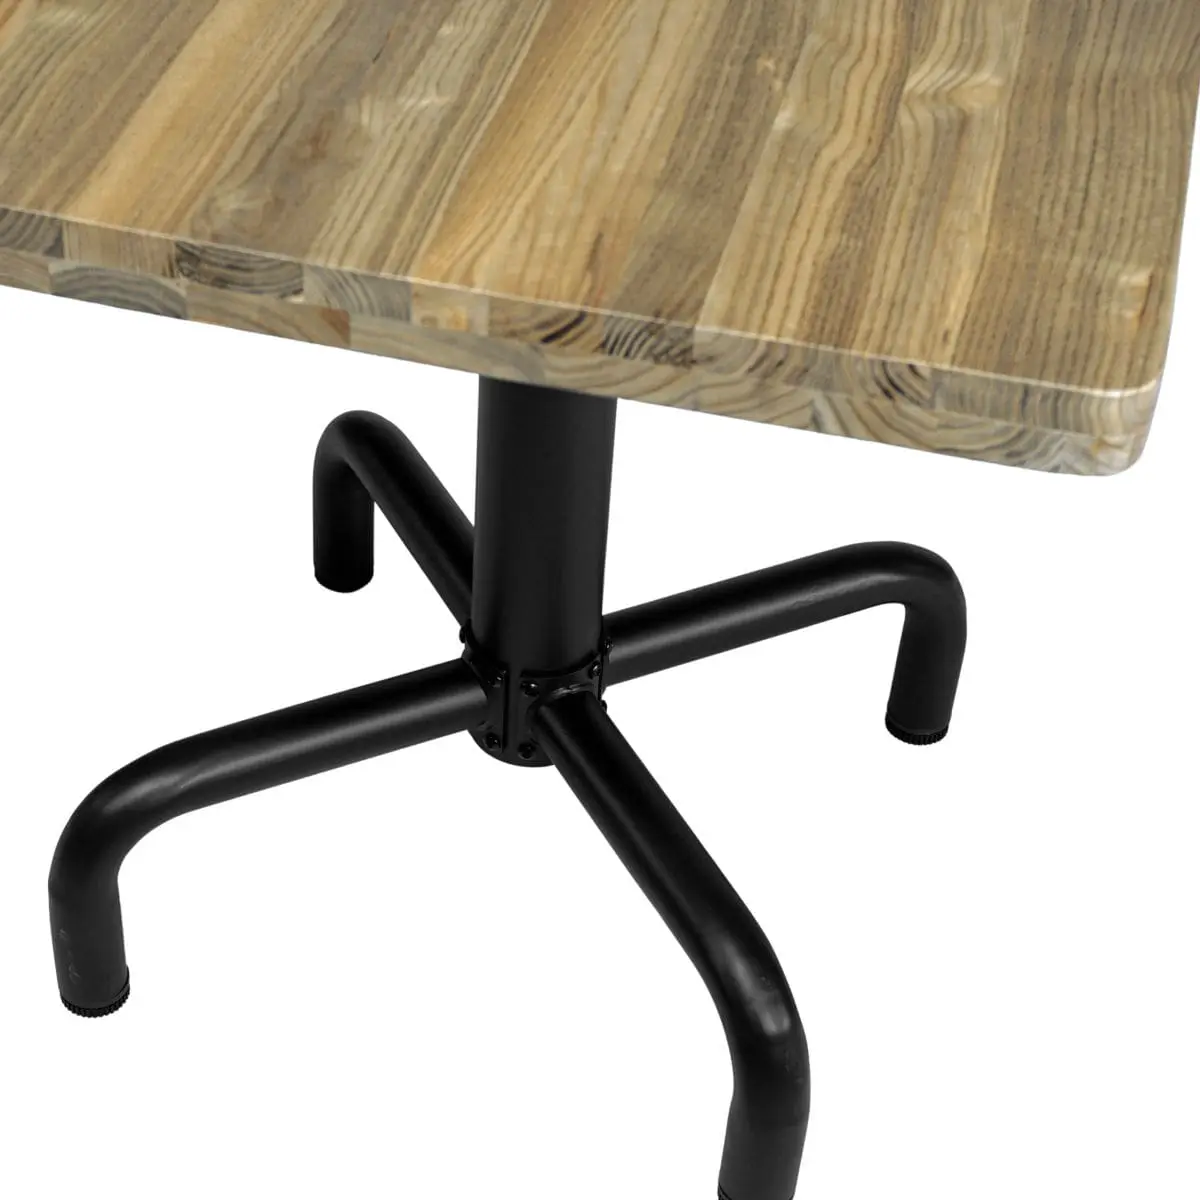 Kleiner Tisch masive dicke Tischplatte langlebig nachhaltig Vintage Industrial Design Gestell schwarze Eisensaeule stabil